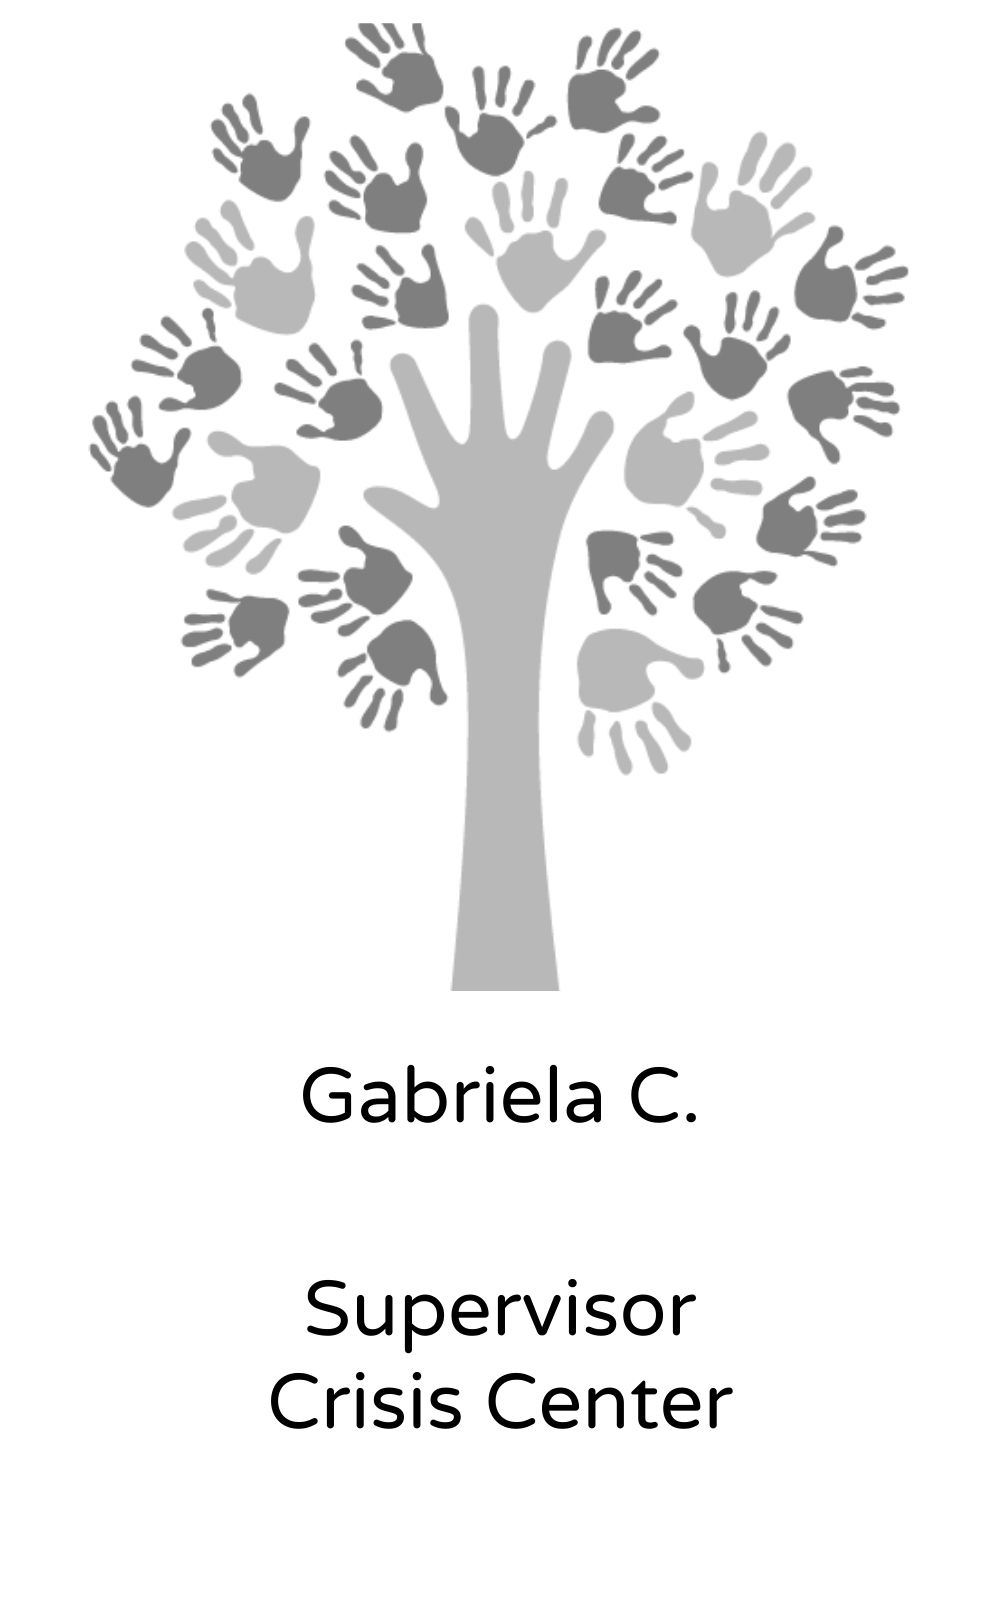 Gabriela C, Supervisor, Crisis Center